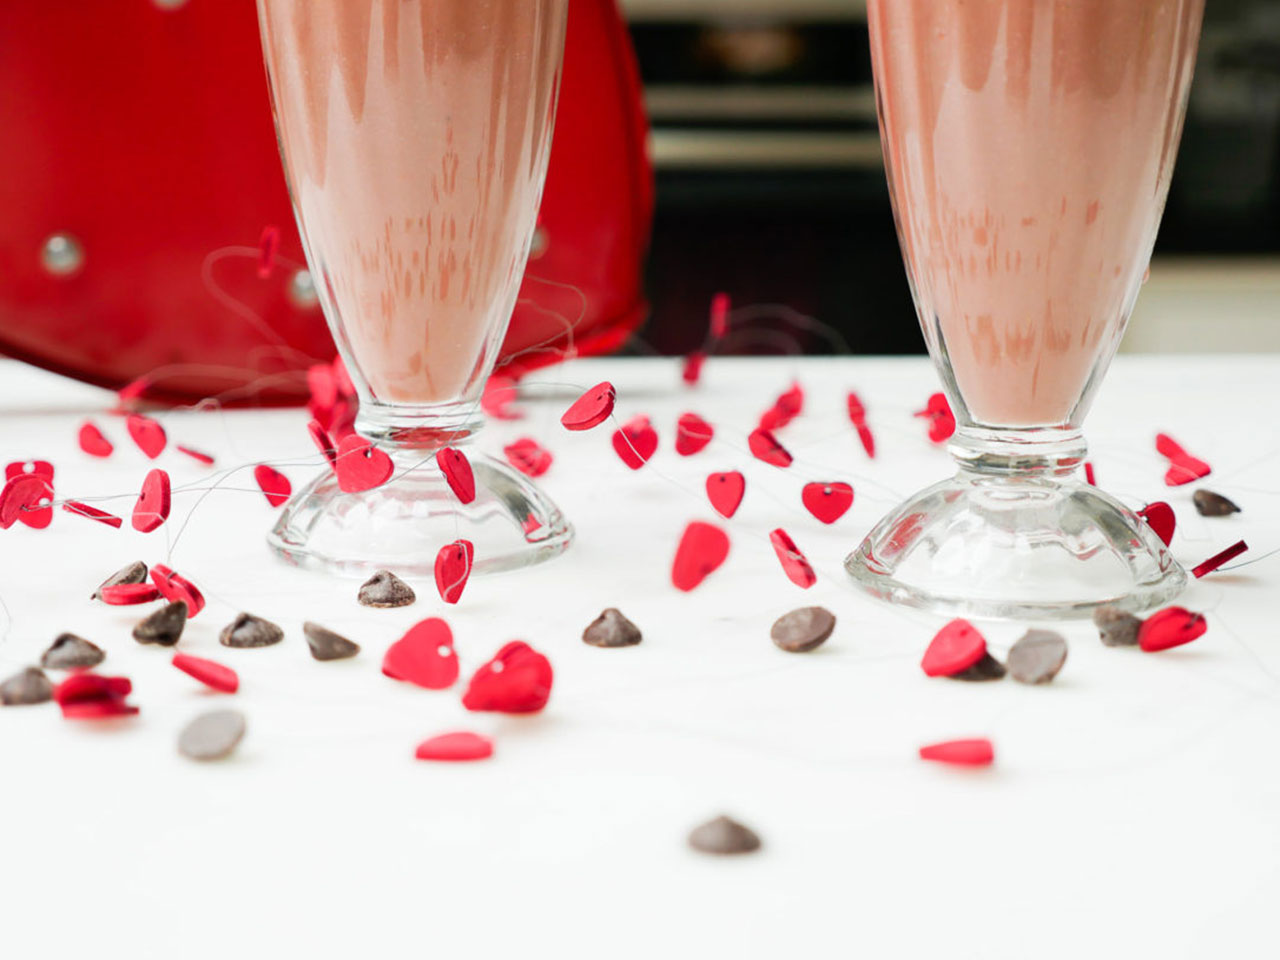 Eva Amurri shares a recipe for Chocolate-Covered Strawberry Smoothies